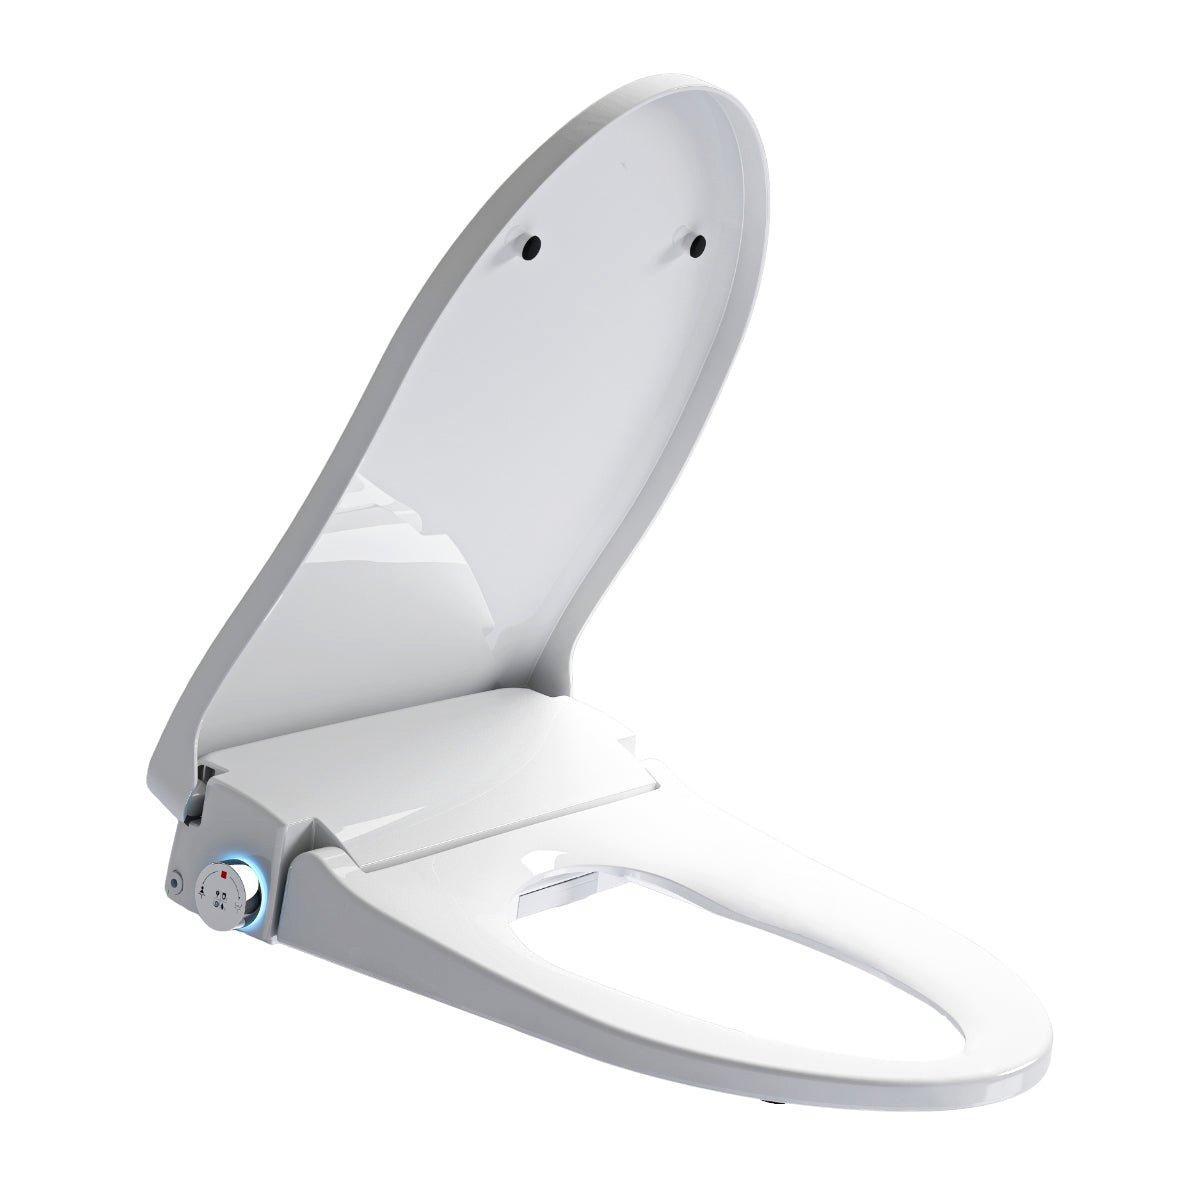 Ener-J Smart Toilet Seat Cover